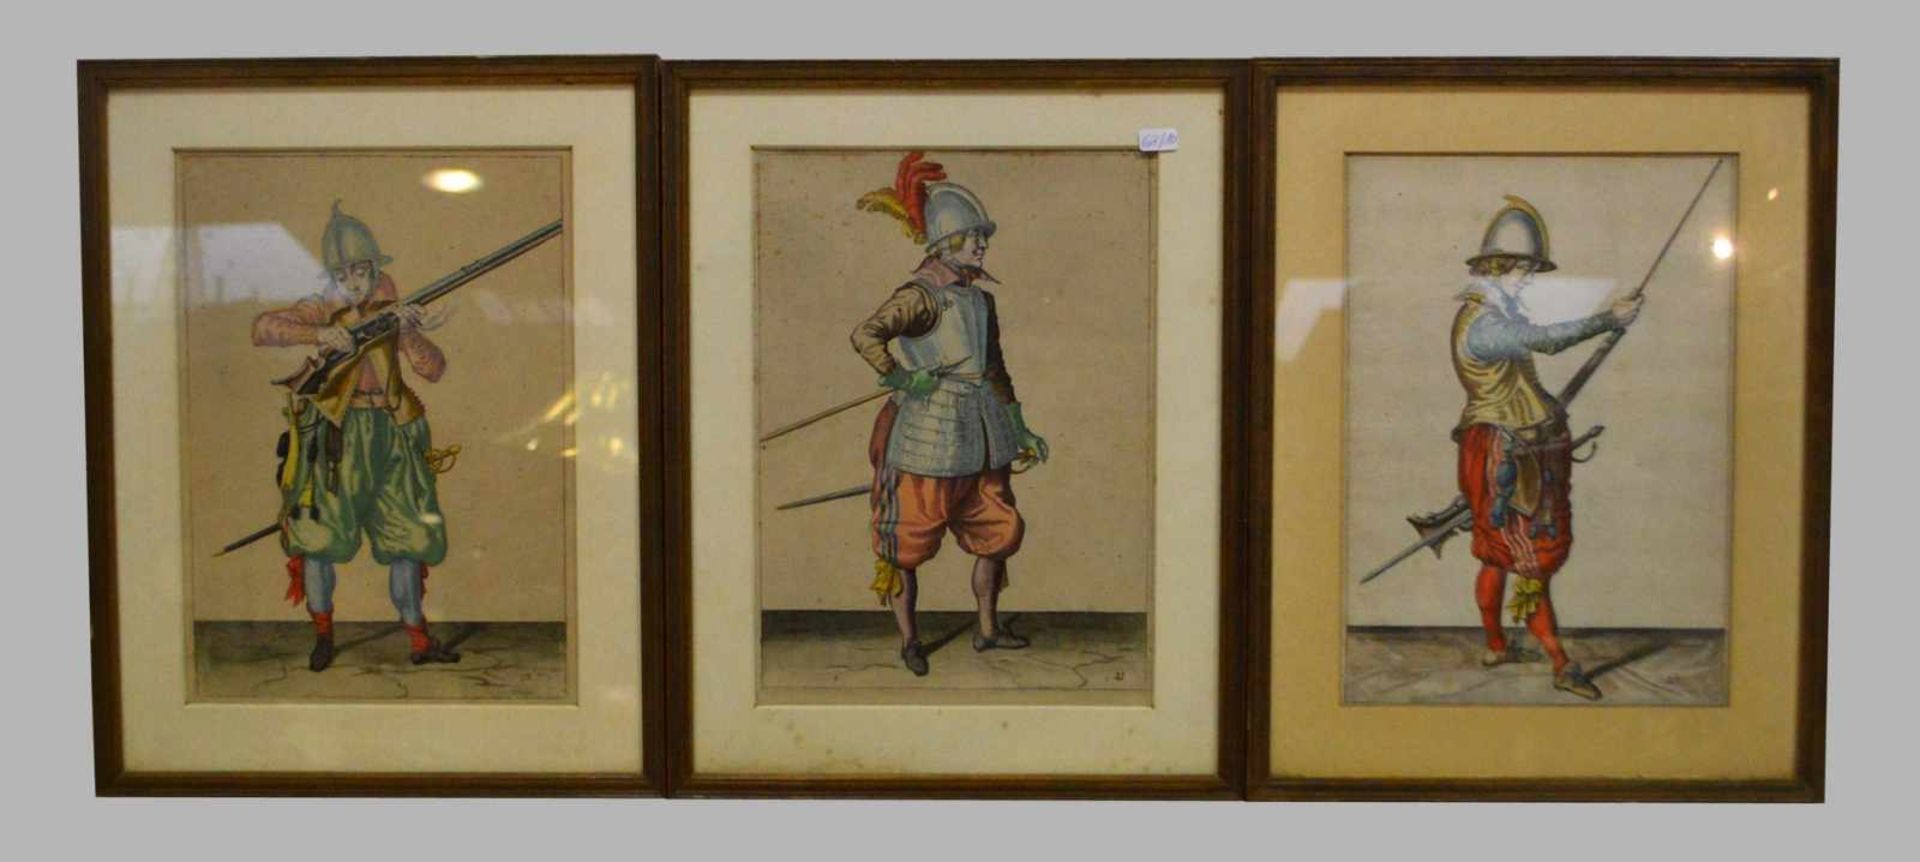 Drei Kupferstiche Soldaten in Uniform, coloriert, im Rahmen, 28 X 35 cm, 18. Jh.